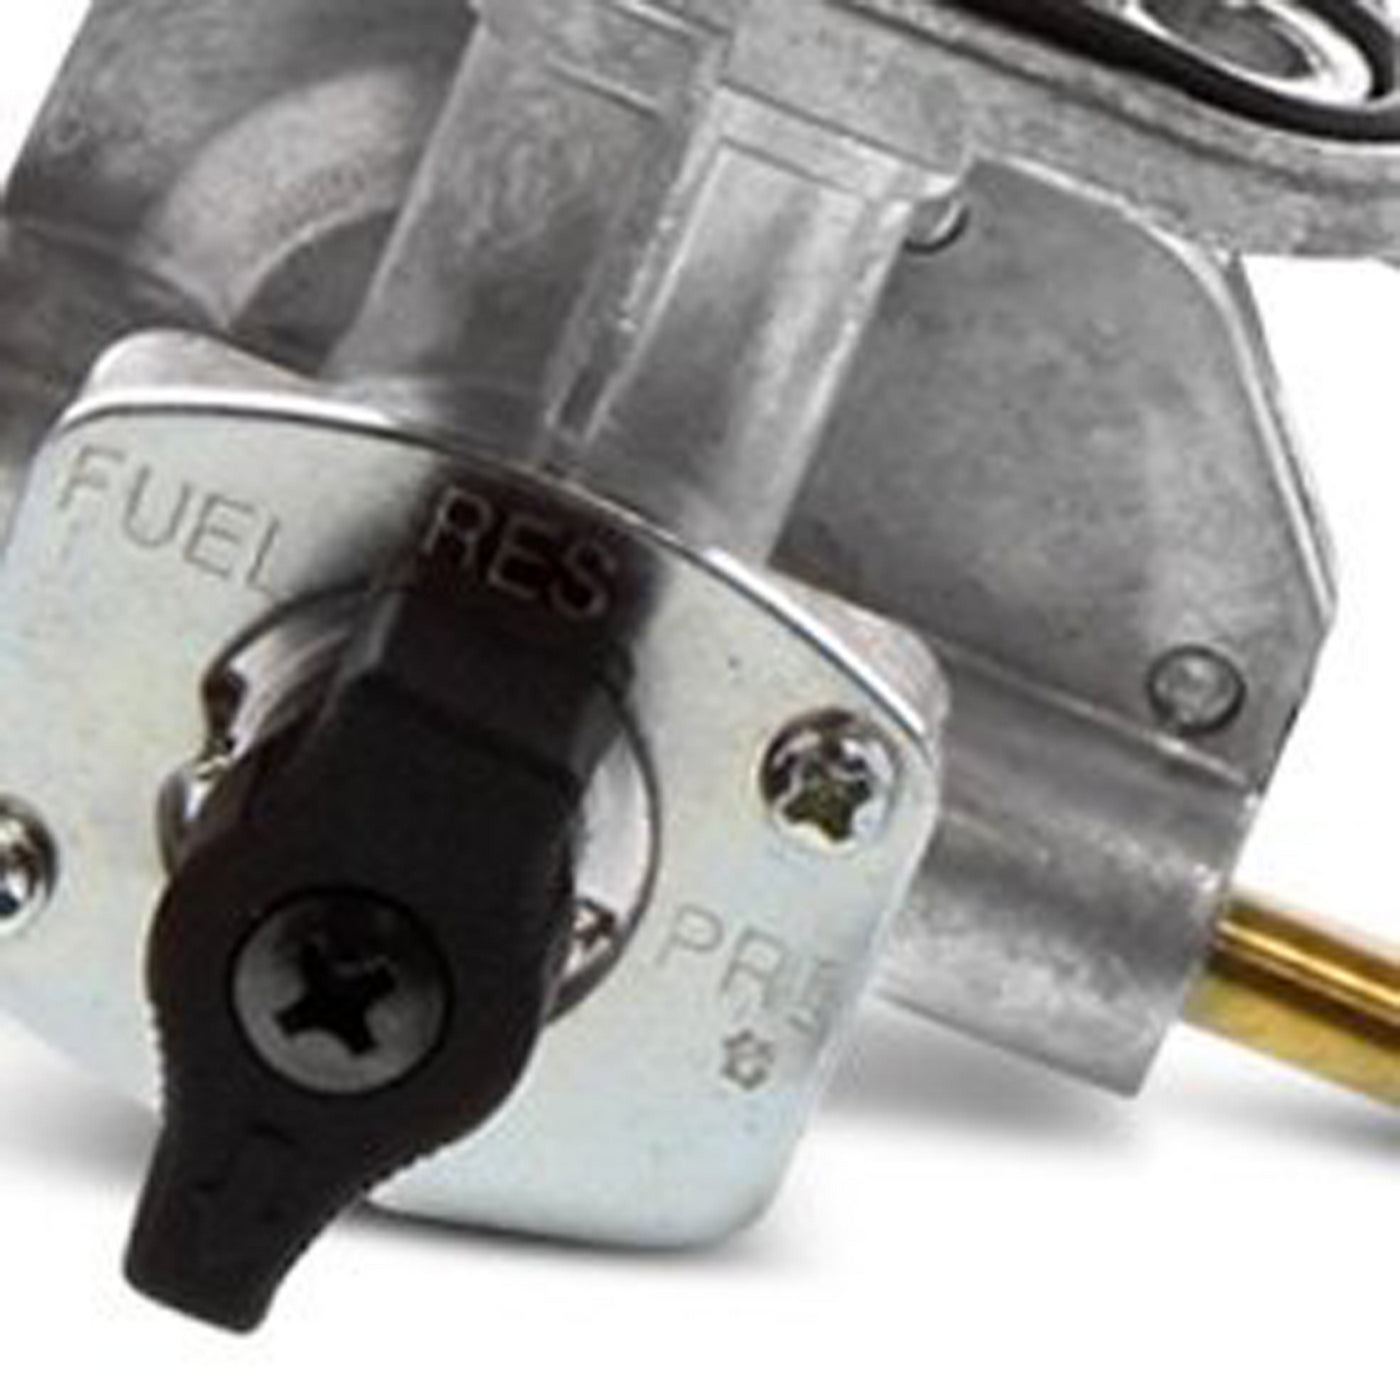 Fuel Star FS101-0152 Fuel Valve Kit #FS101-0152